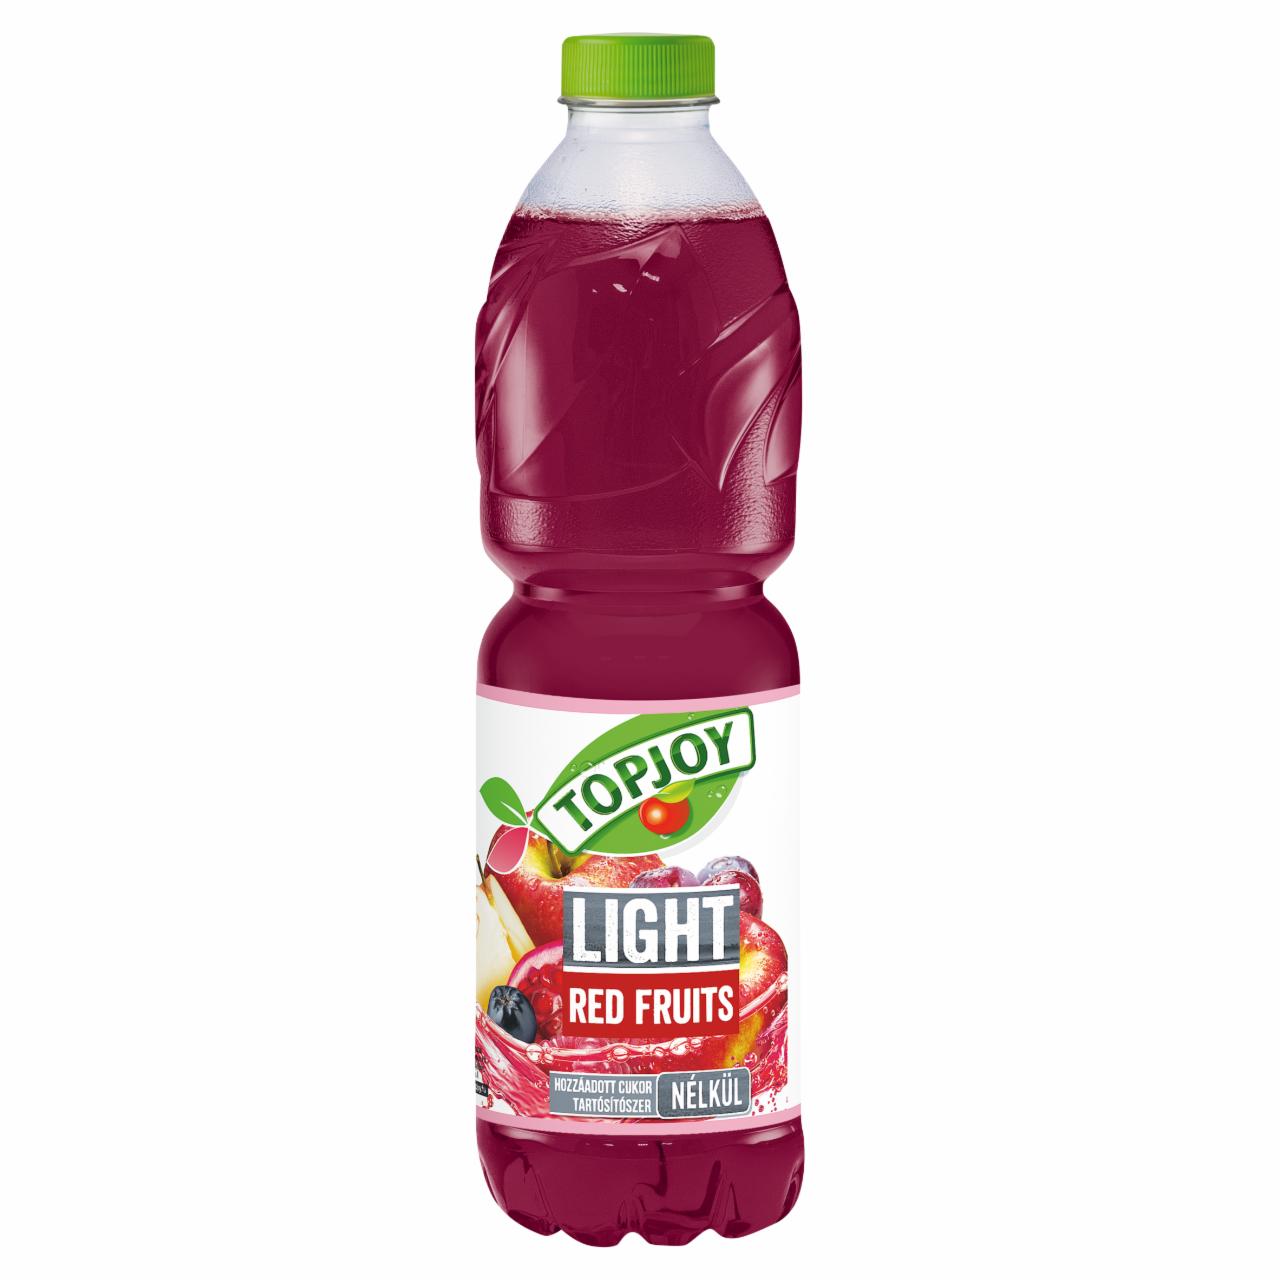 Képek - Topjoy Light Red Fruits szénsavmentes vegyes gyümölcsital édesítőszerekkel 1,5 l